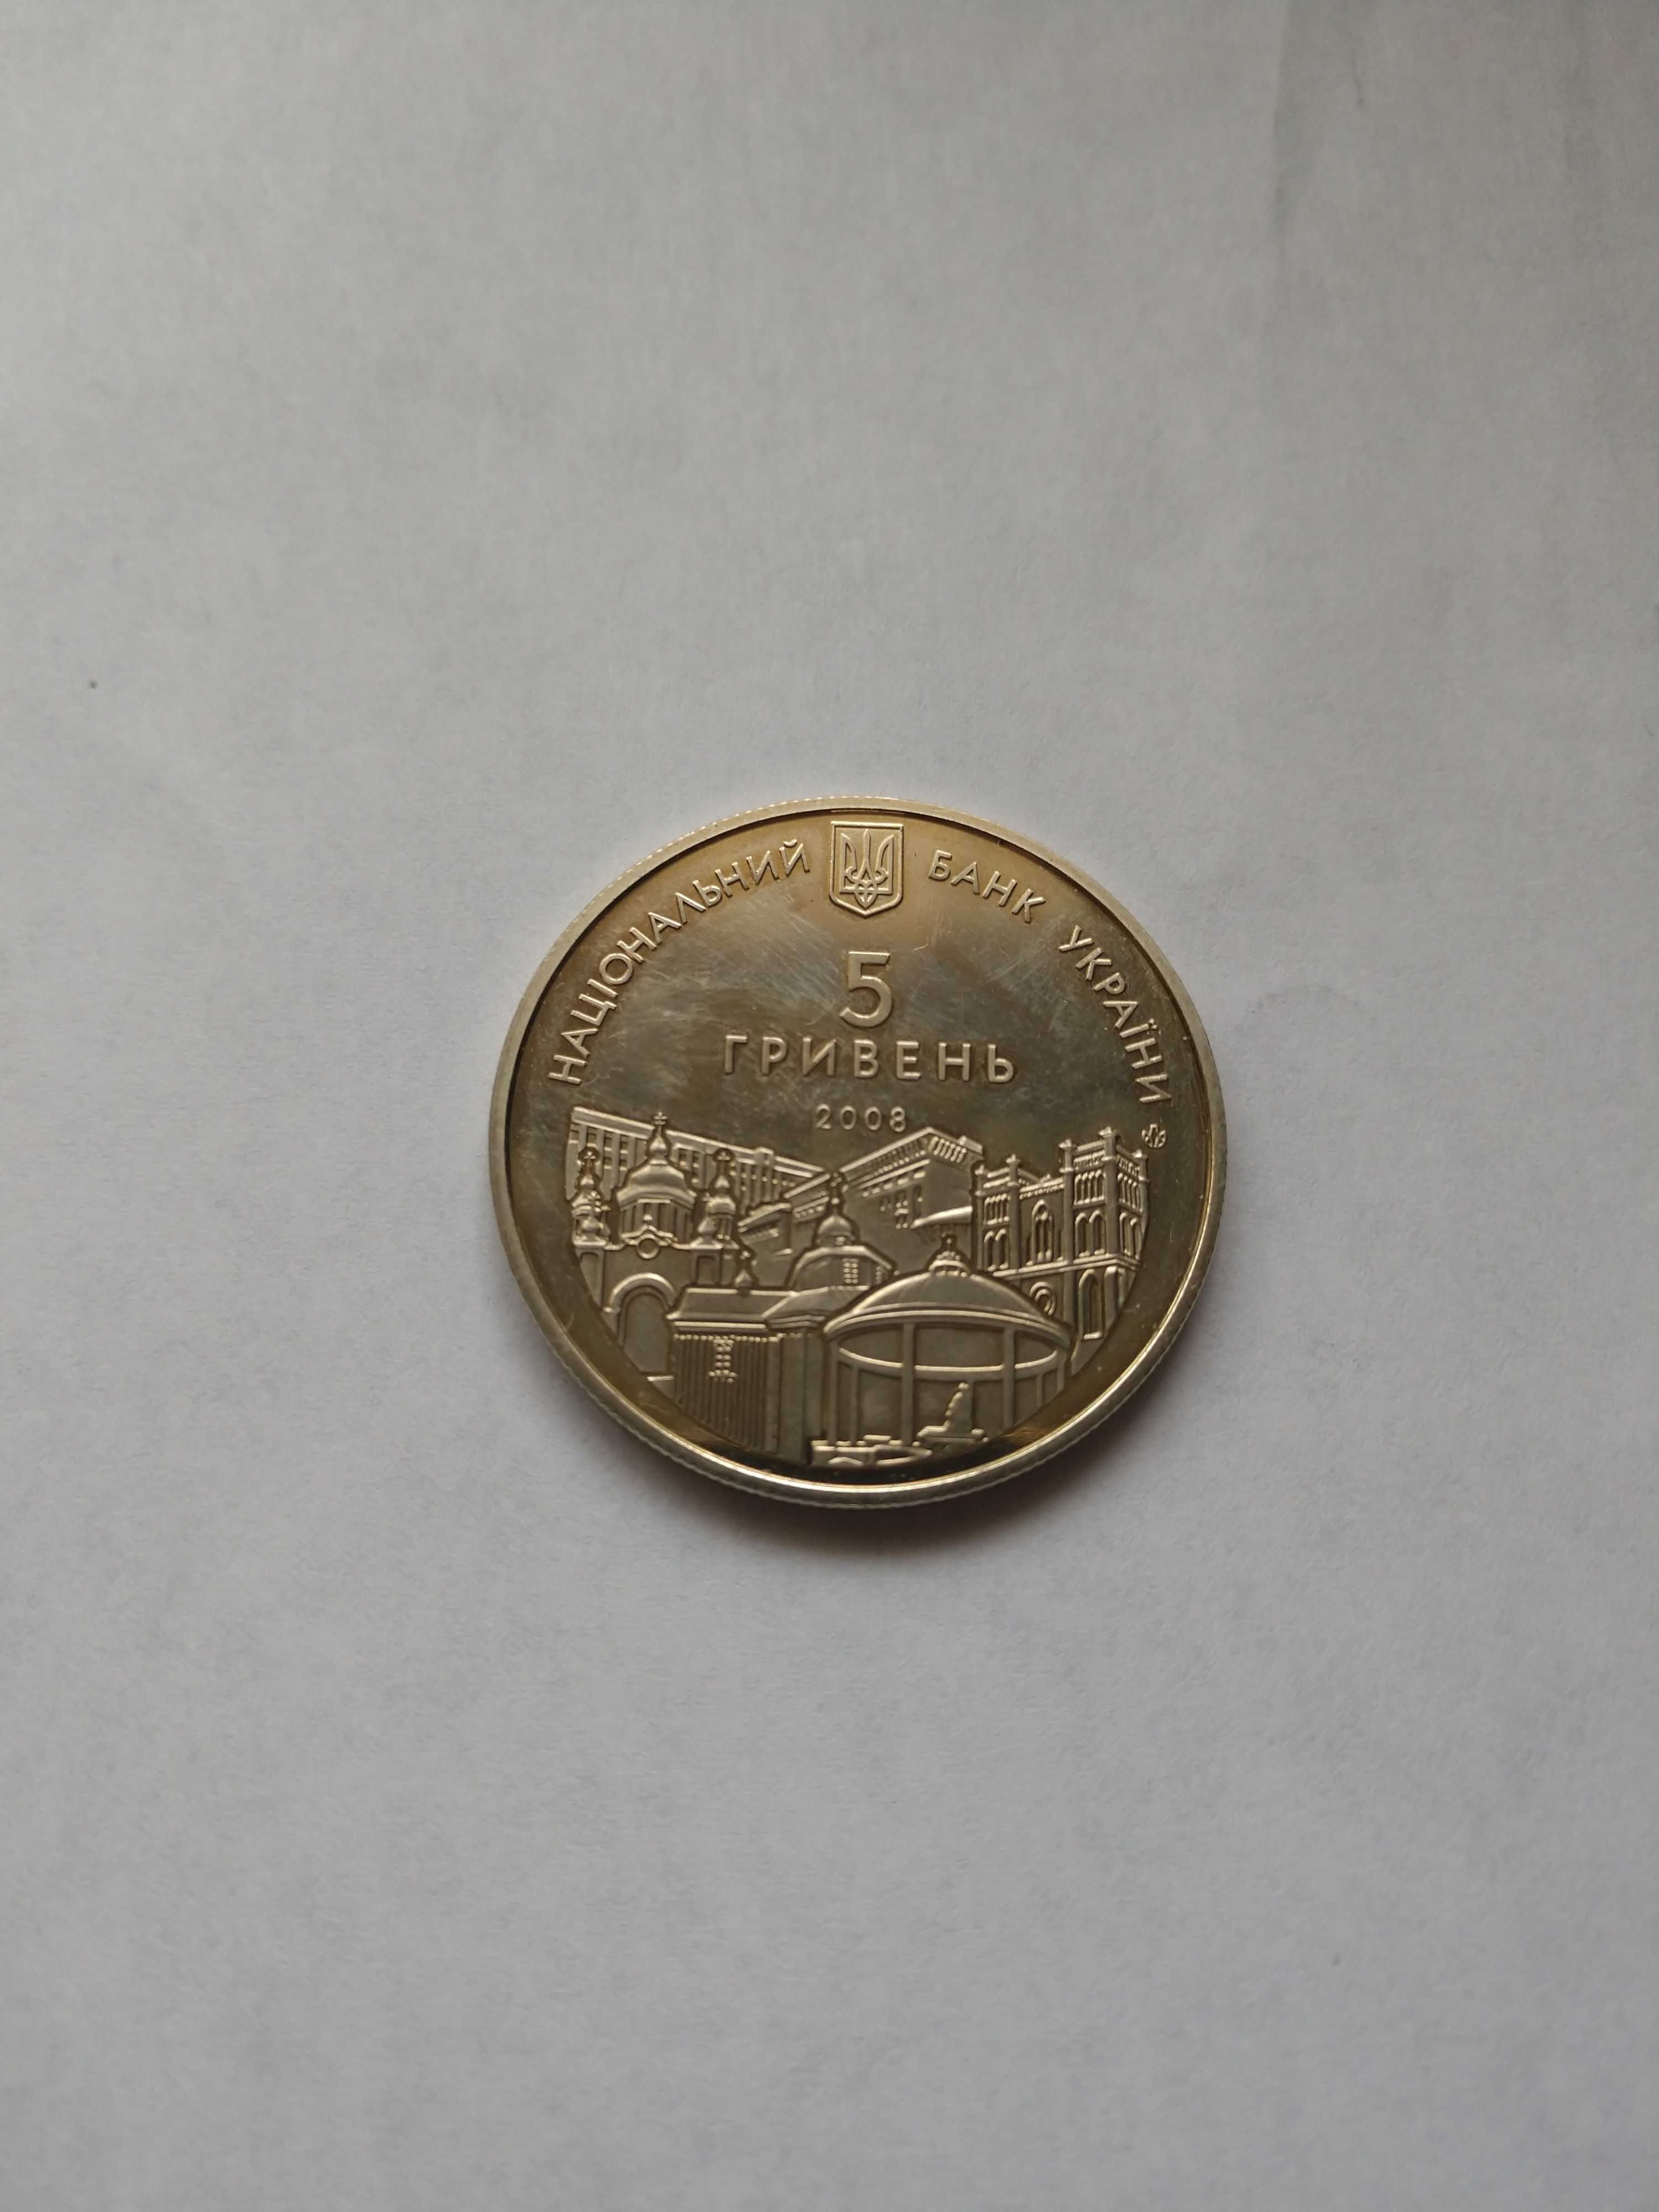 Ювілейна монета "Рівне '725 років" номіналом 5 грн.